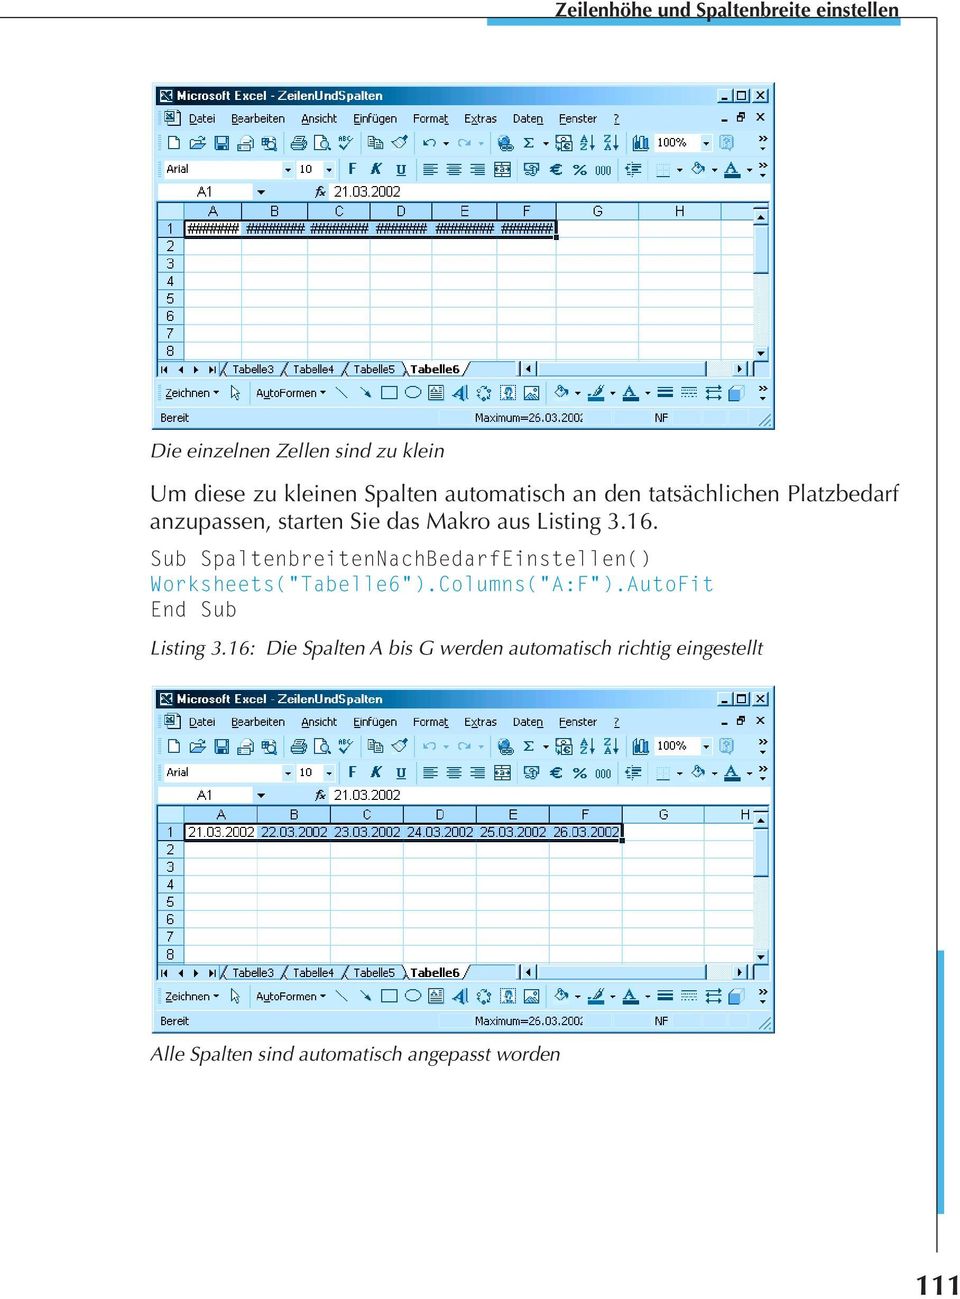 Sub SpaltenbreitenNachBedarfEinstellen() Worksheets("Tabelle6").Columns("A:F").AutoFit Listing 3.